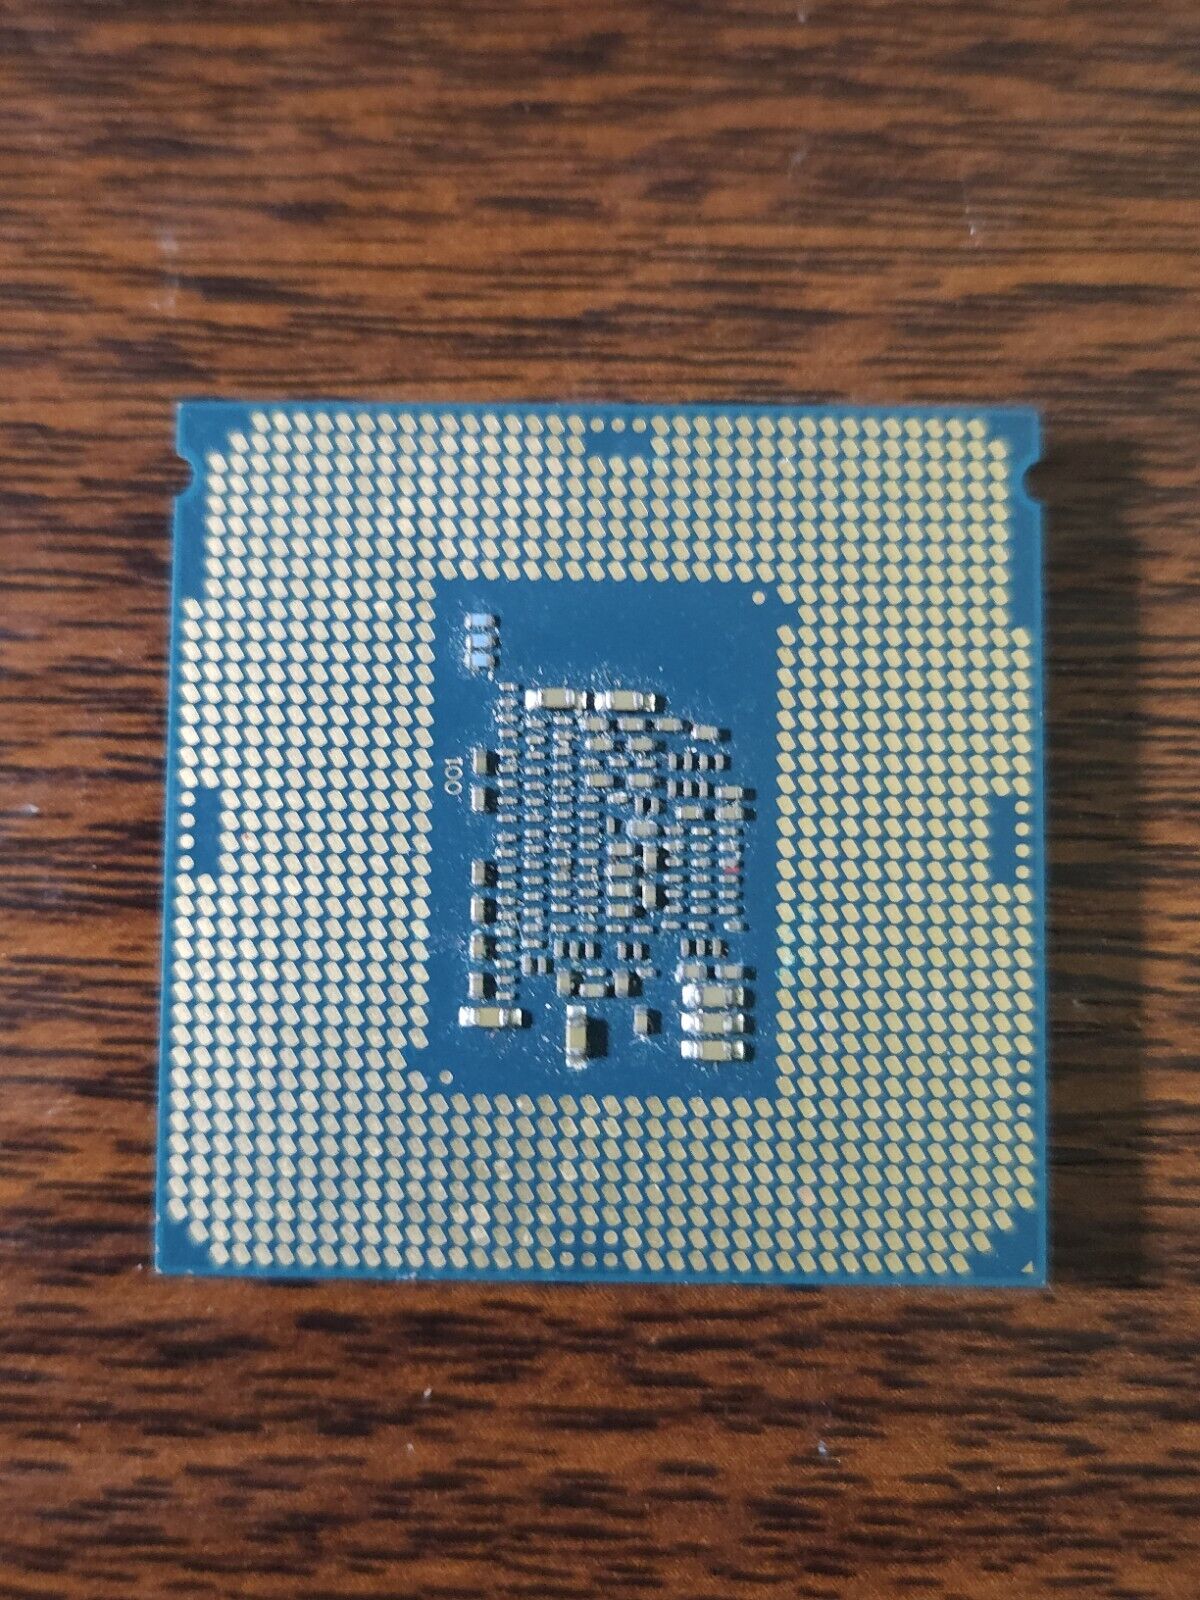 Intel Core i3-6100 3.70GHz Socket LGA1151 Processor CPU (SR2HG) Intel